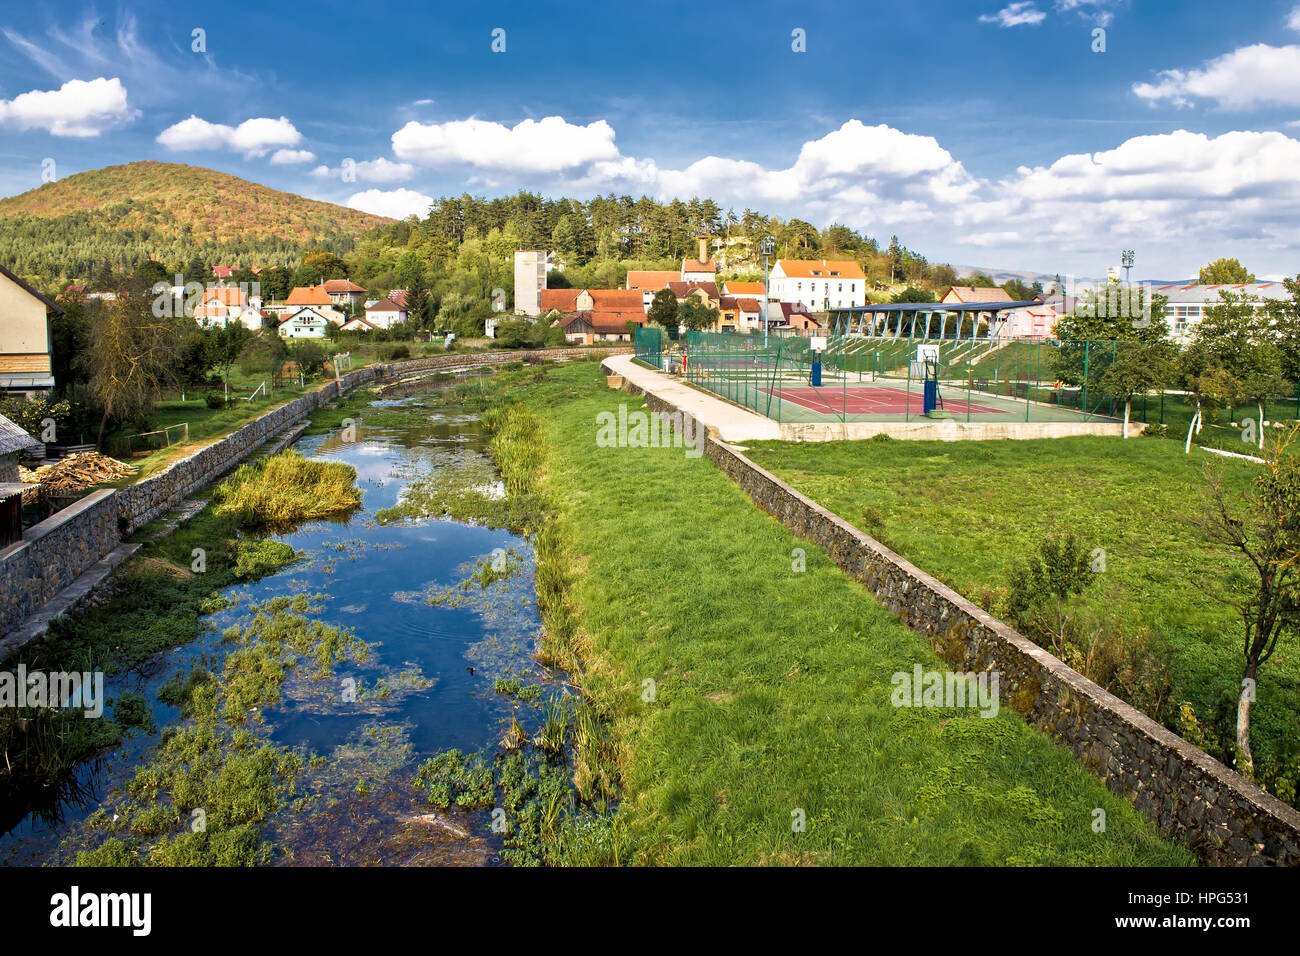 Town of Otocac - Gacka river, Lika, Dalmatia Stock Photo